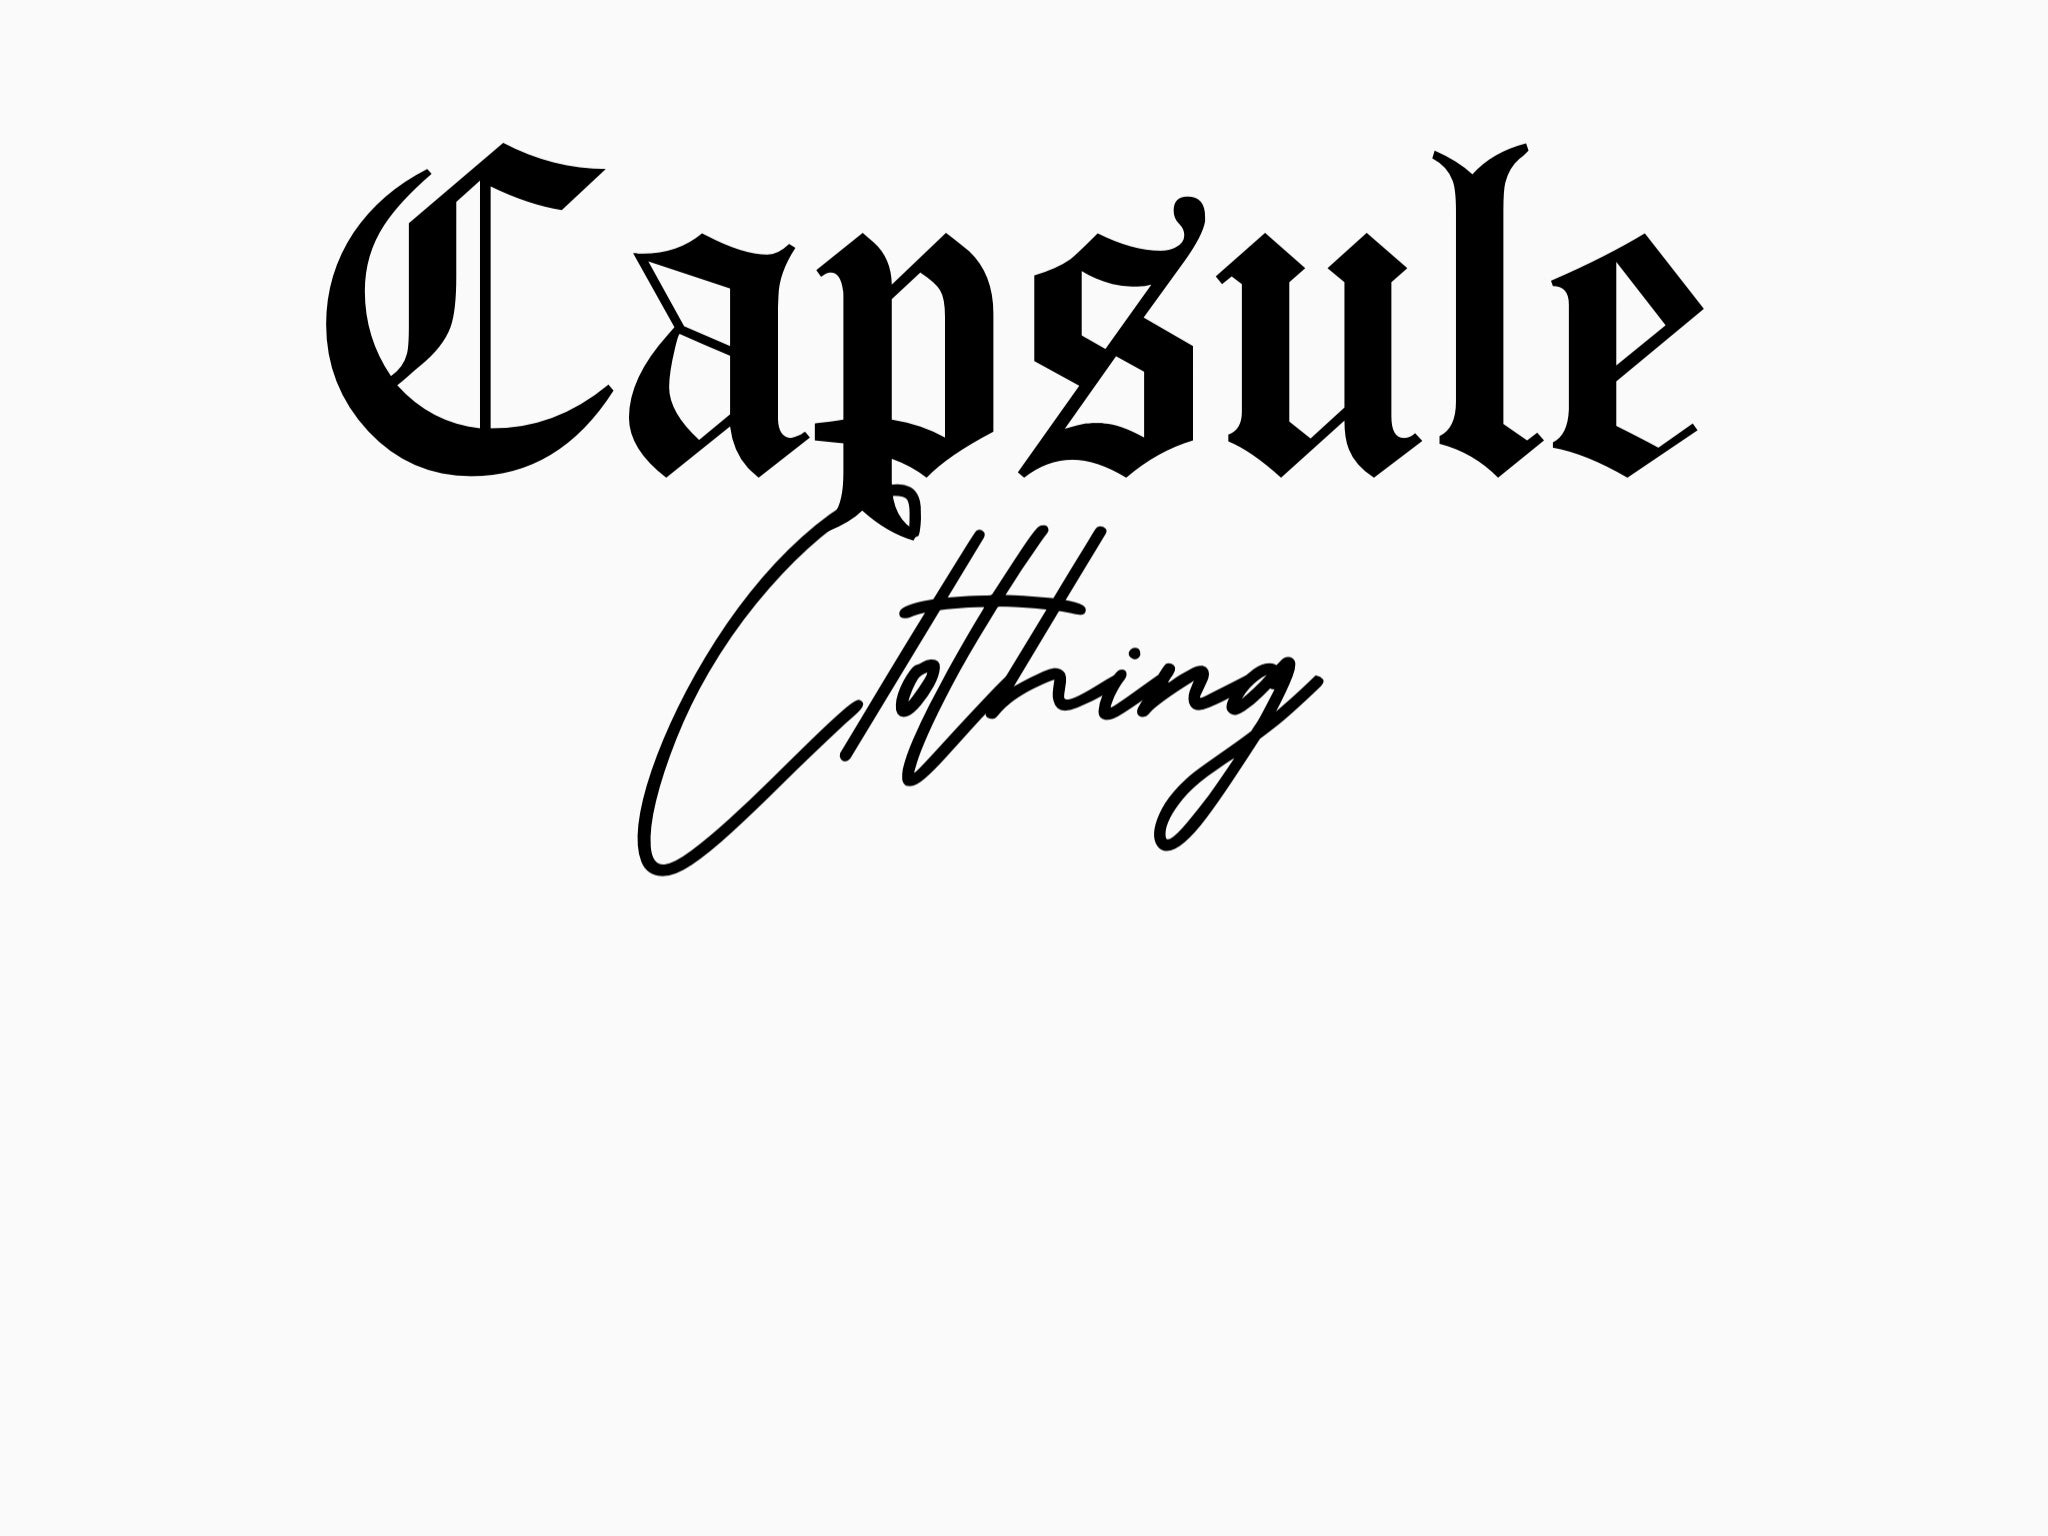 Capsule – capsule